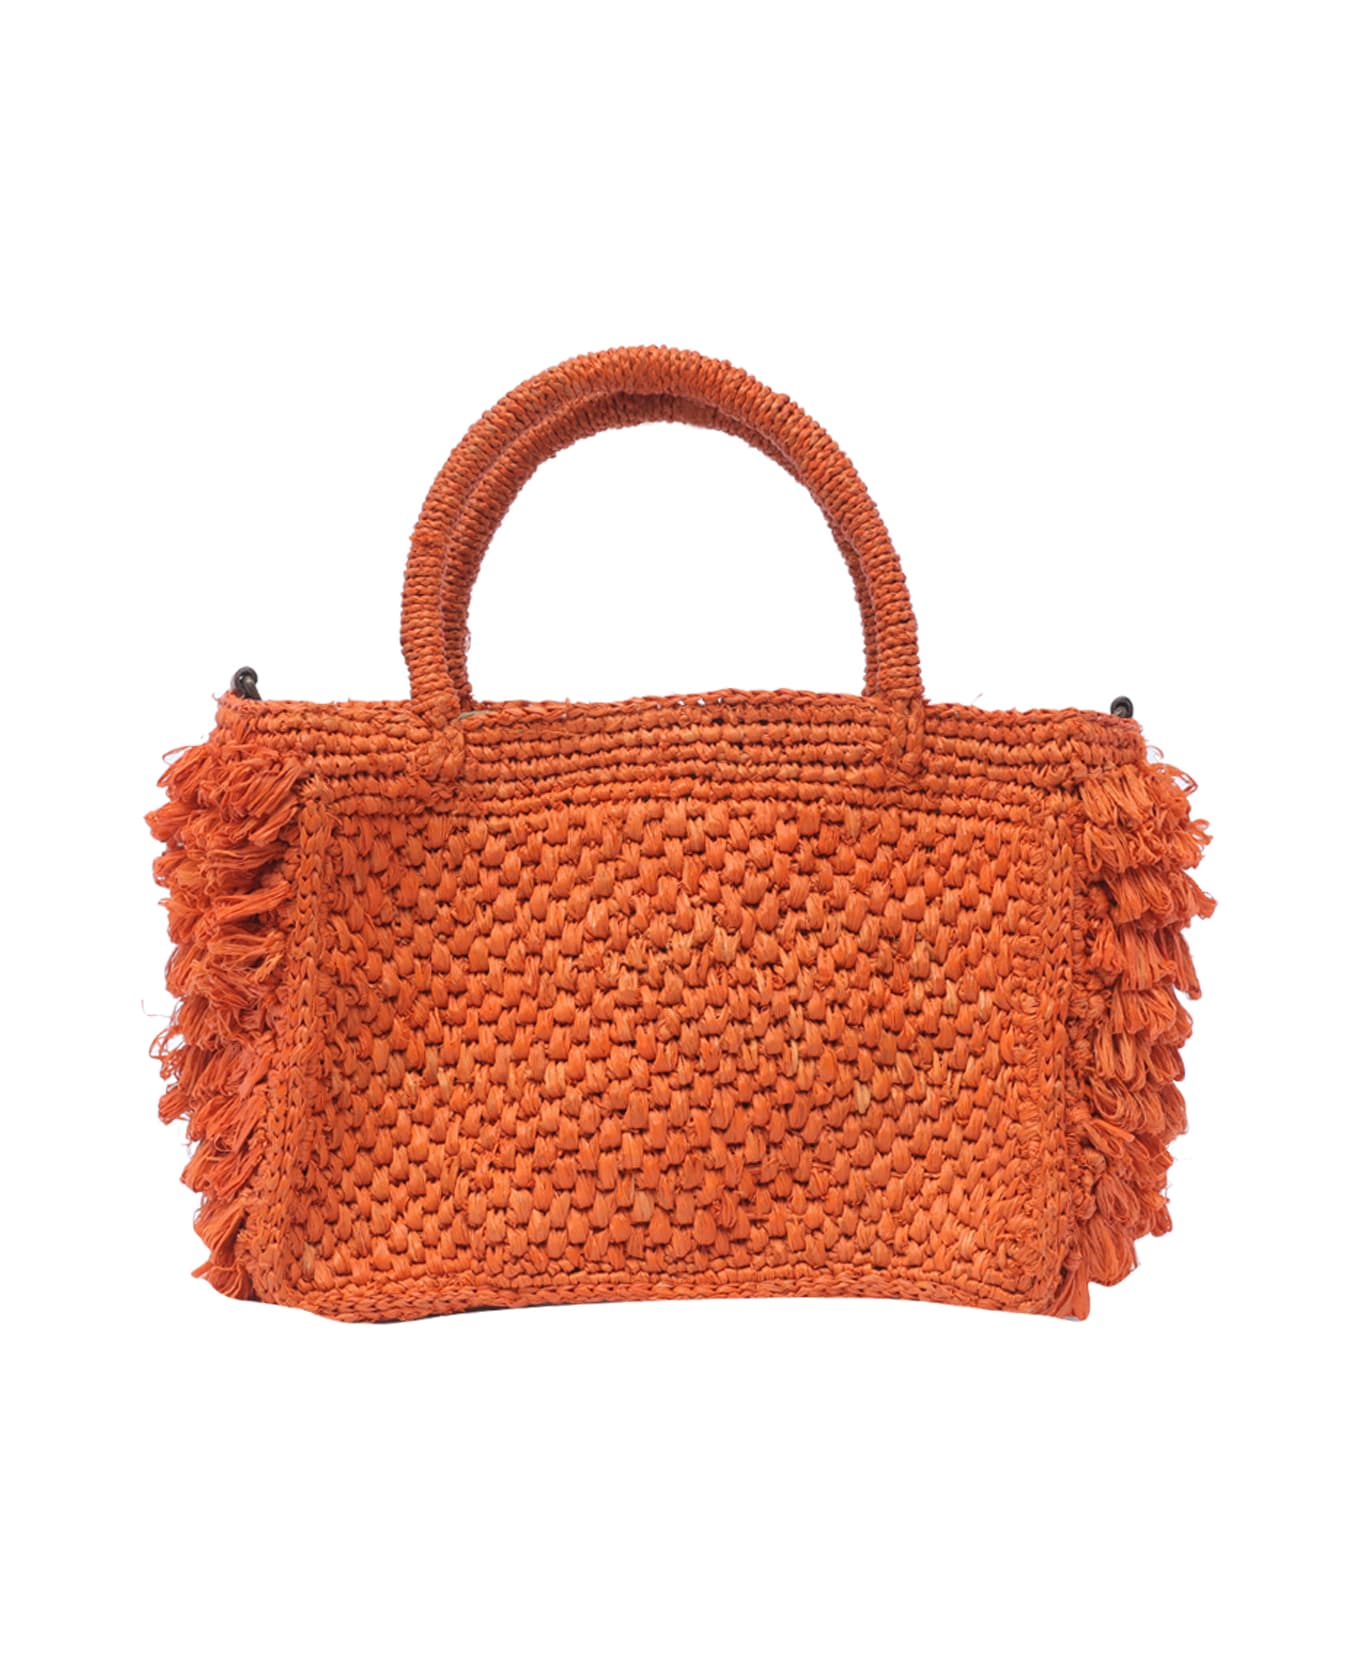 Ibeliv Cocktail Handbag - Orange